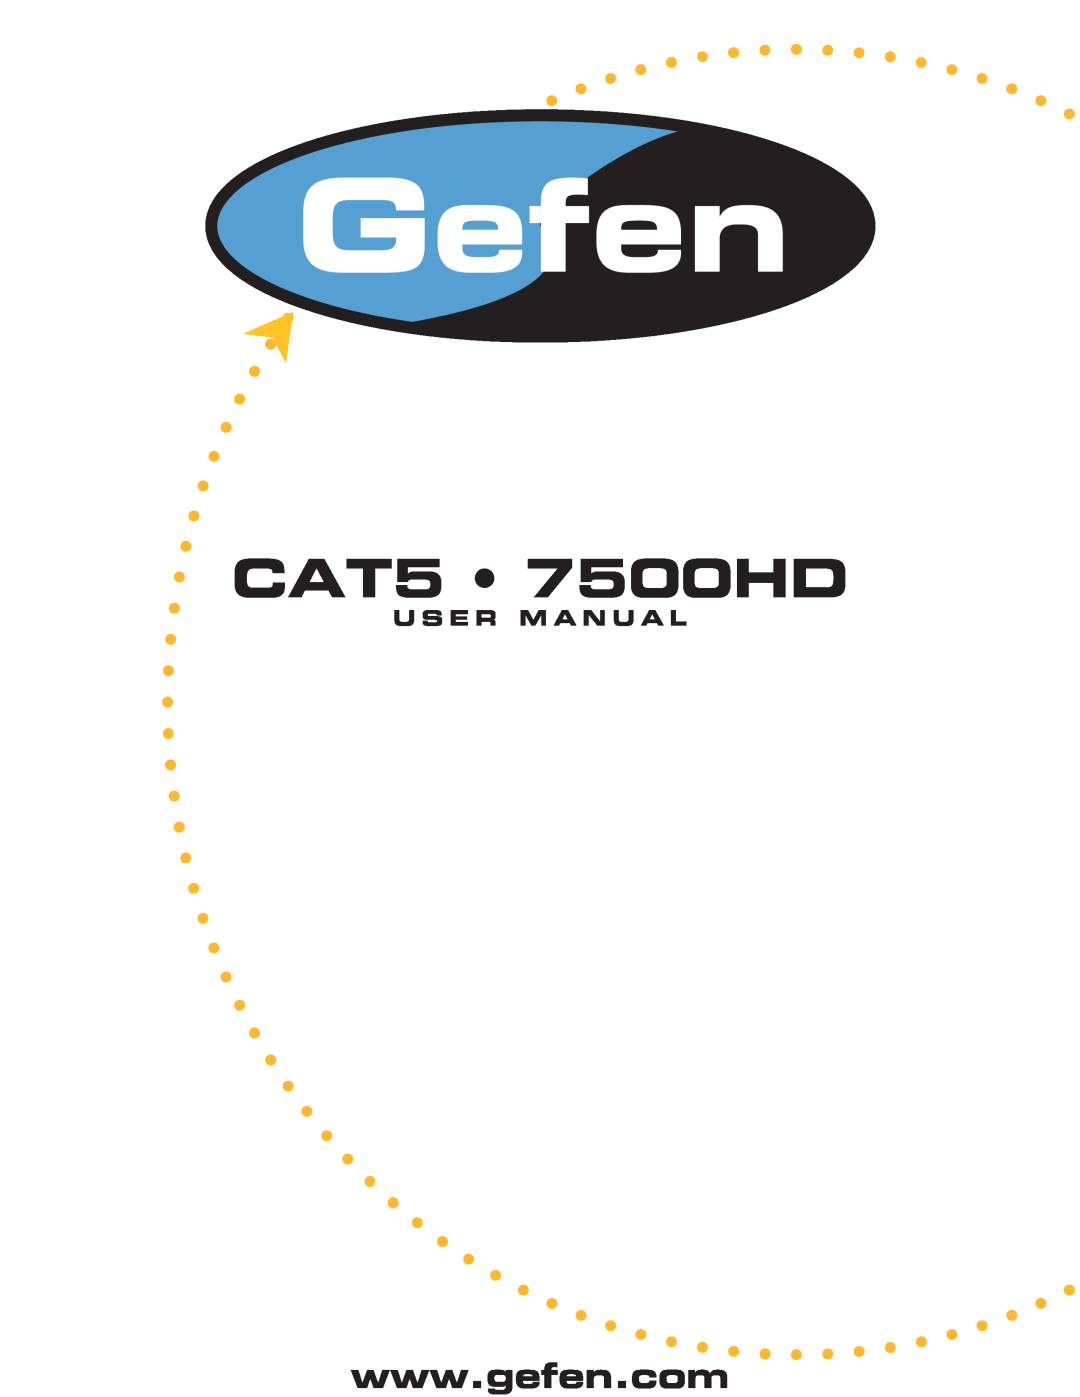 Gefen user manual CAT5 7500HD, U S E R M A N U A L 